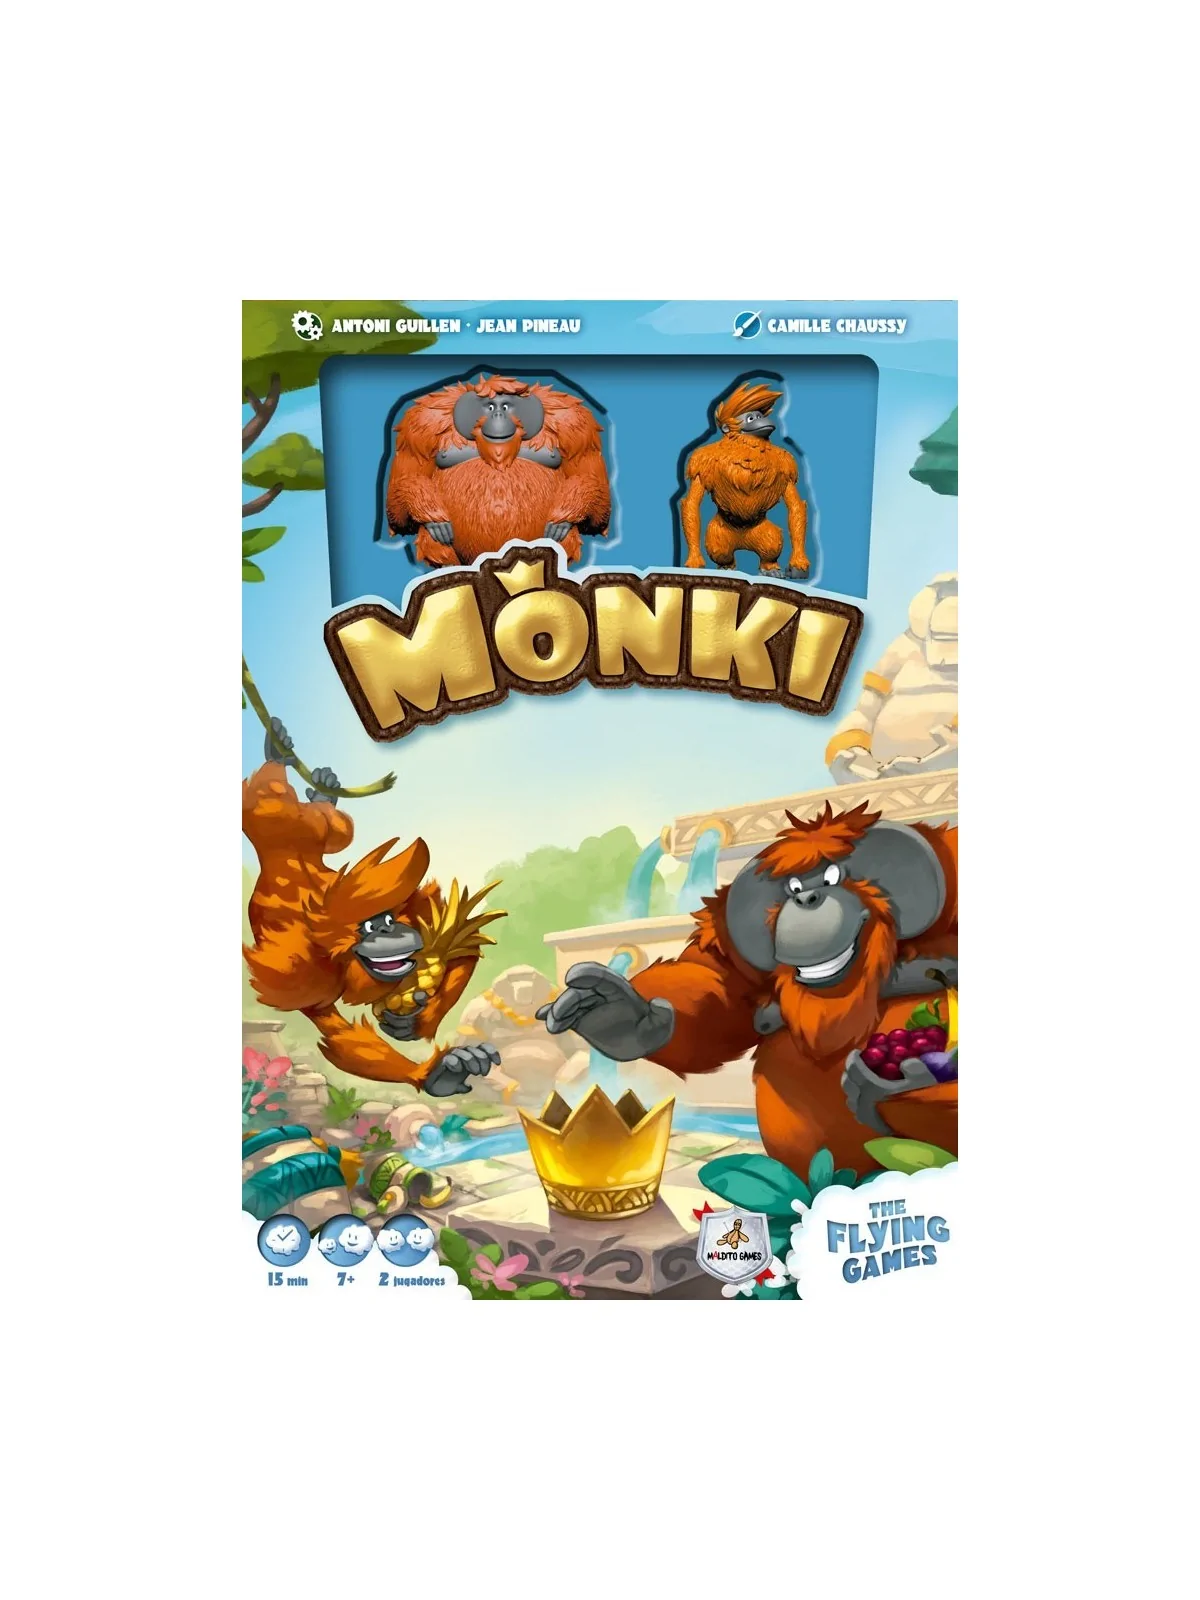 Comprar Monki barato al mejor precio 19,80 € de Maldito Games